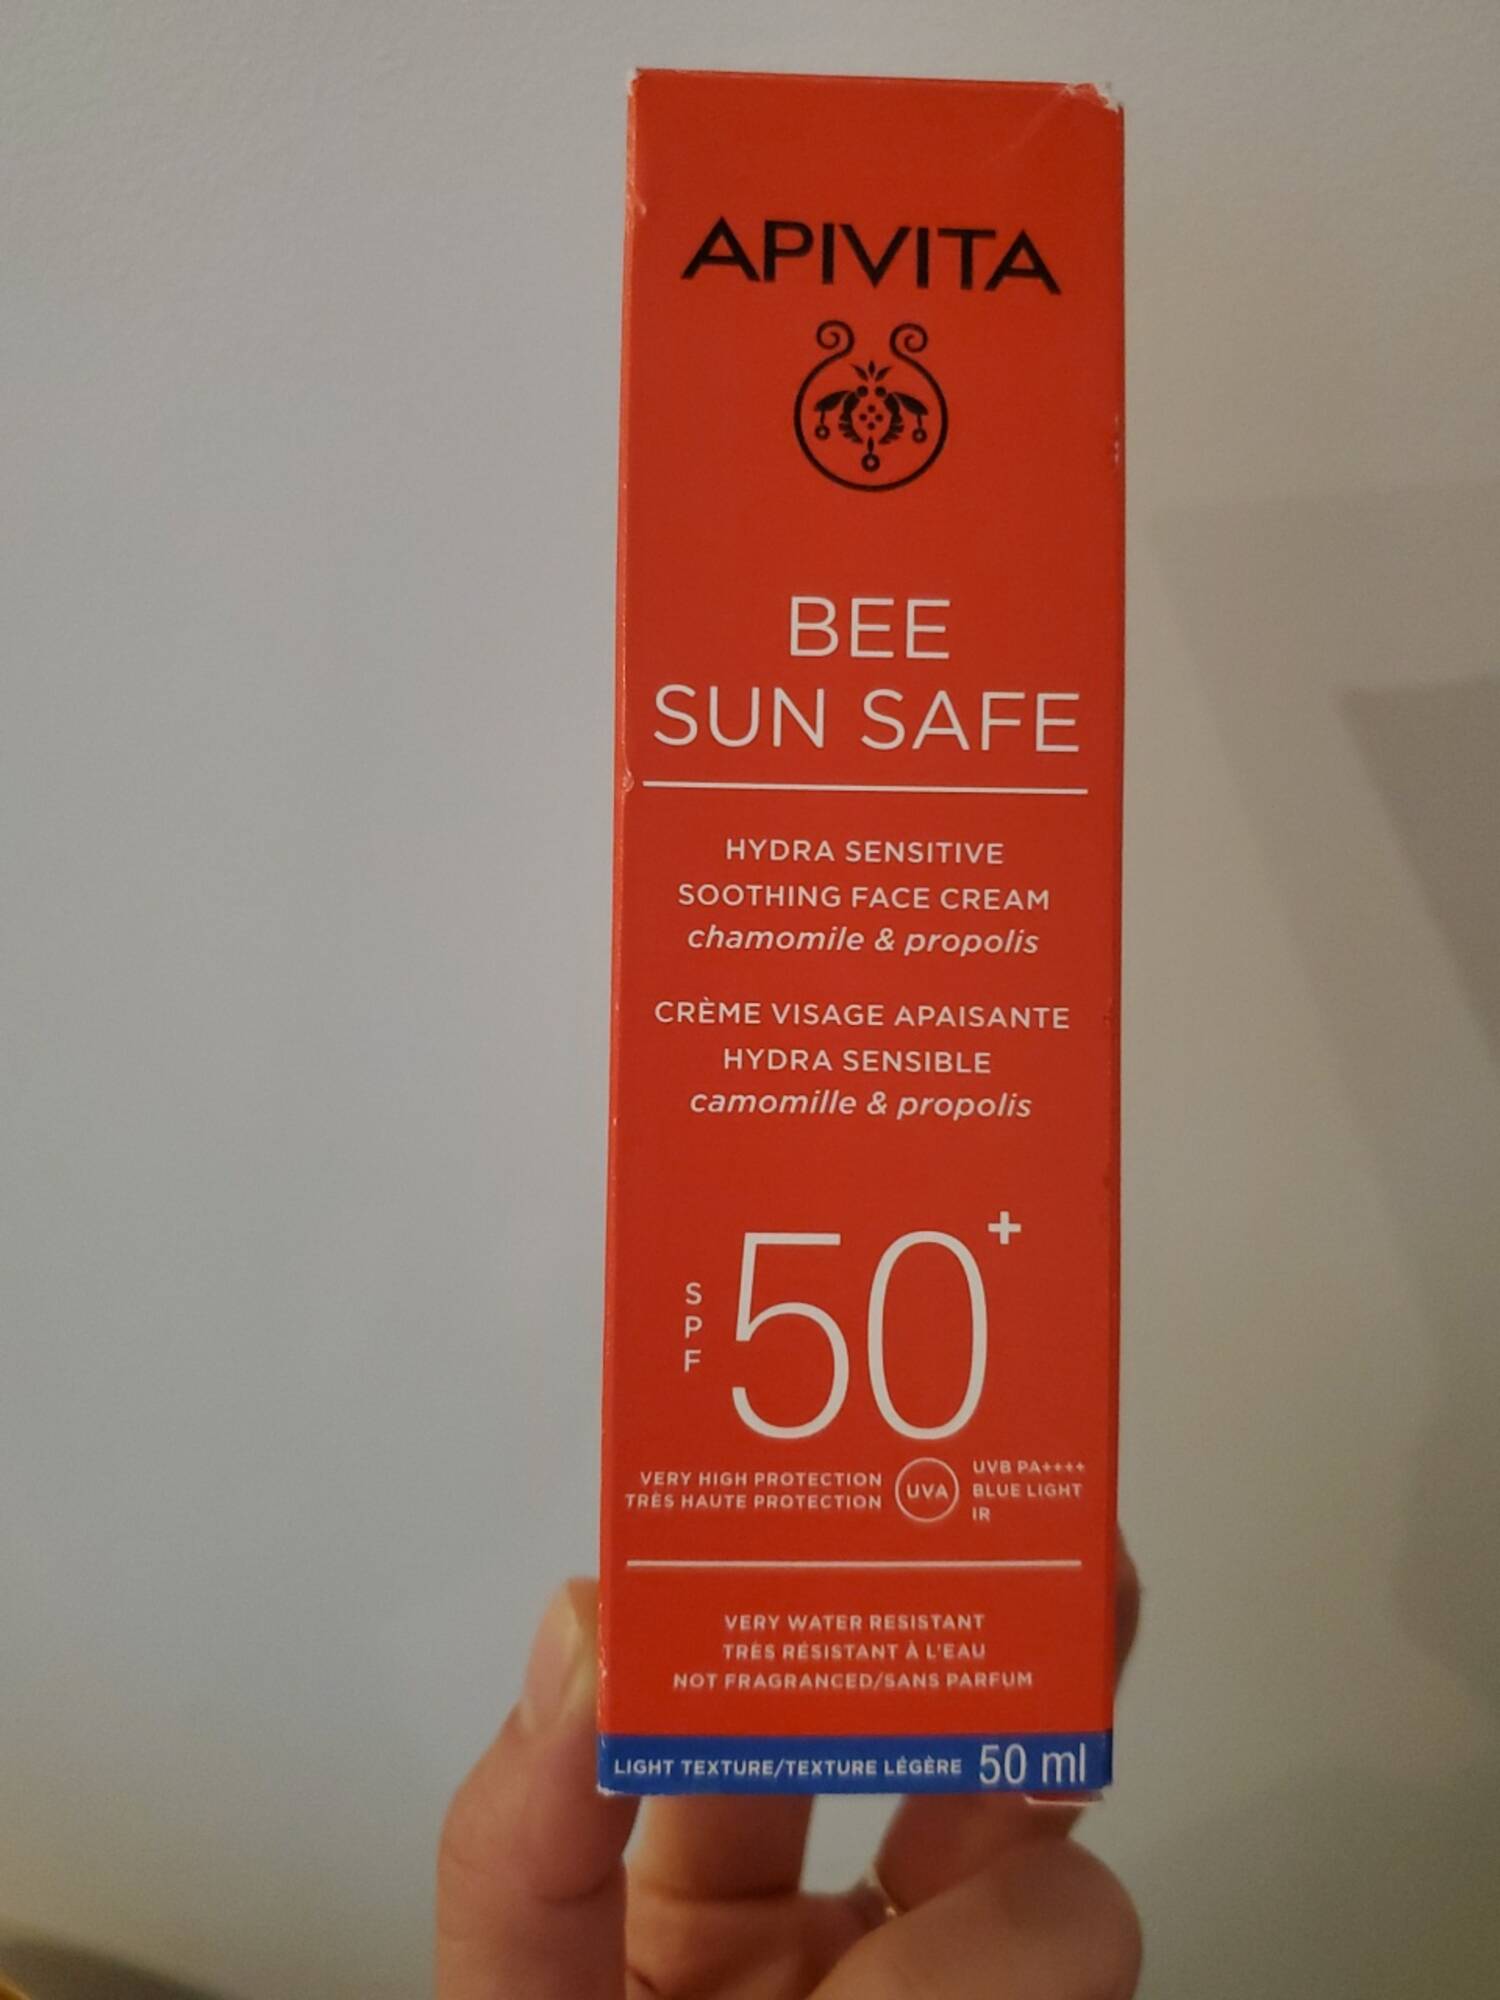 APIVITA - Bee sun safe - Crème visage apaisante spf50+